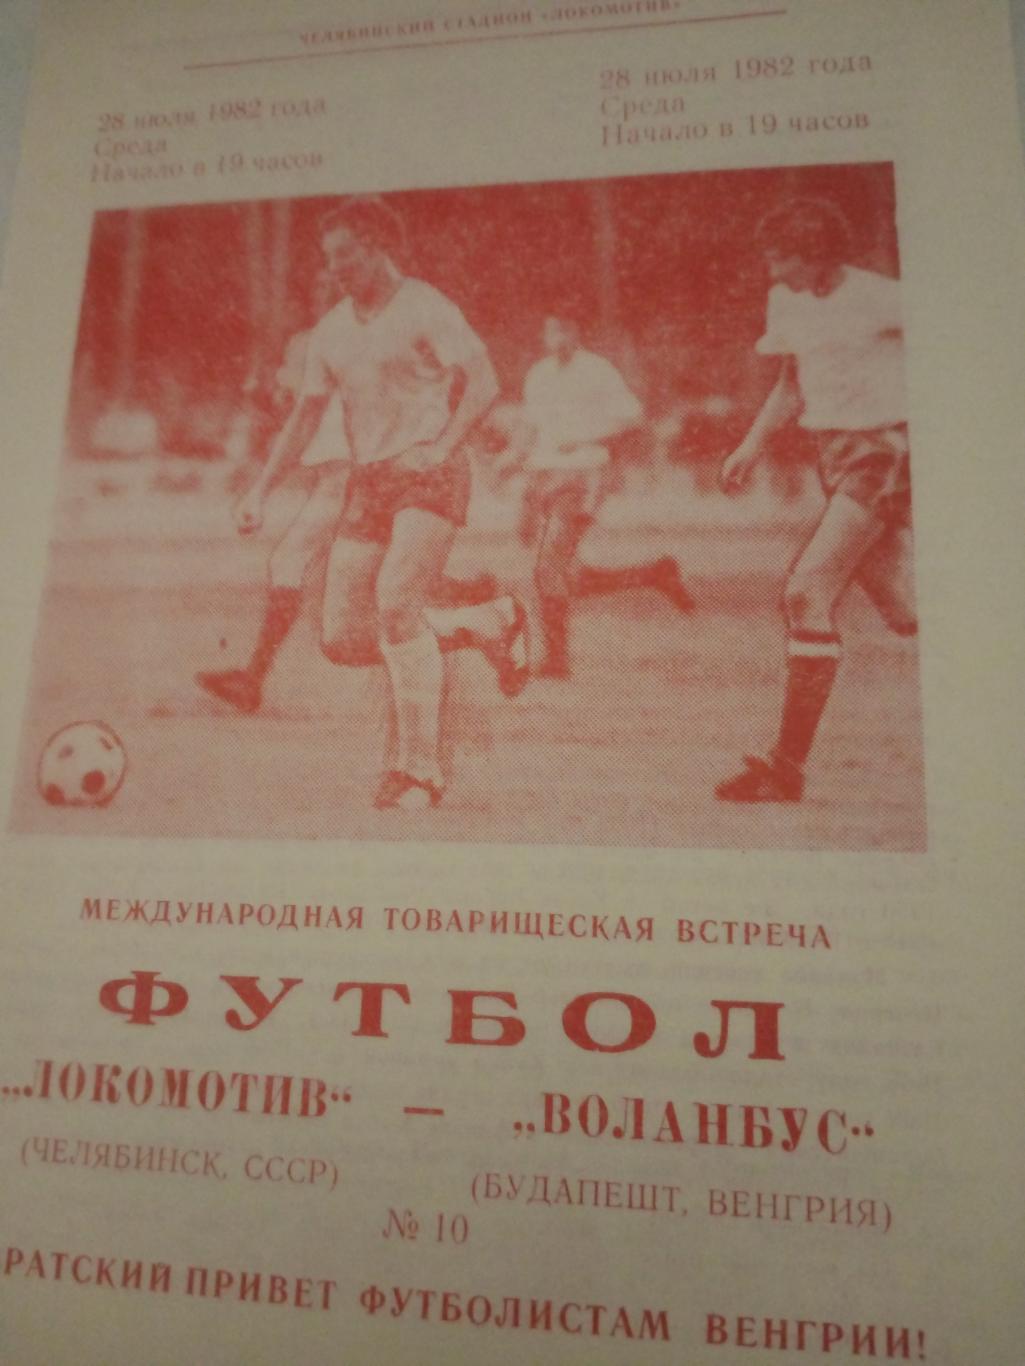 Локомотив Челябинск - Воланбус Будапешт. 28 июля 1982 год